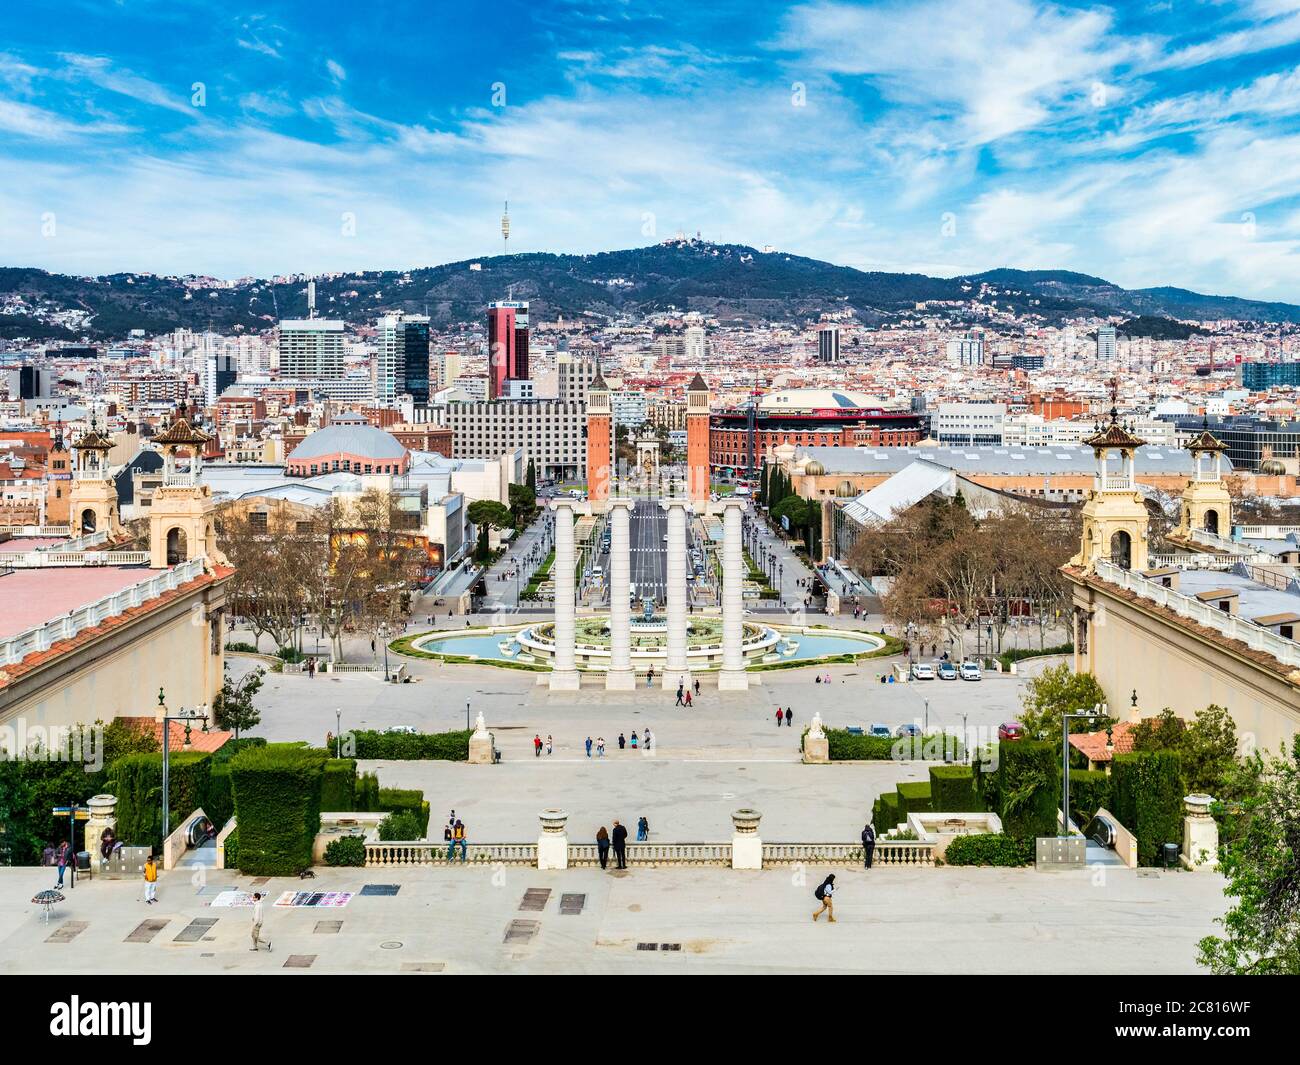 4 mars 2020 : Barcelone, Espagne - vue de Barcelone depuis le Musée national d'Art de Catalogne vers la Plaça d'Espanya. Banque D'Images